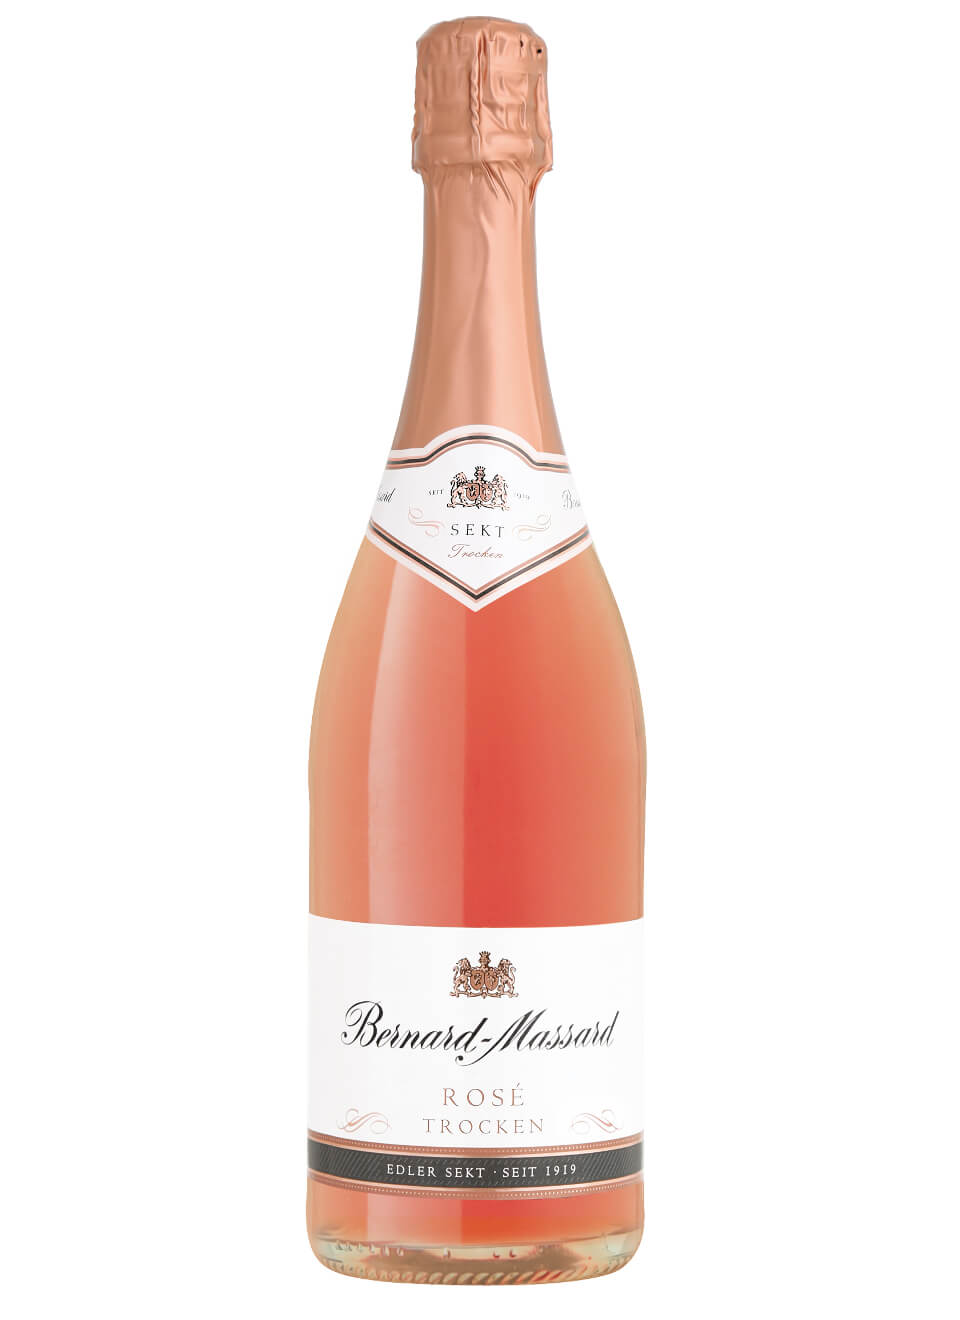  Bernard-Massard Rose Cabinet Sekt Flasche 1 x 0,75 l